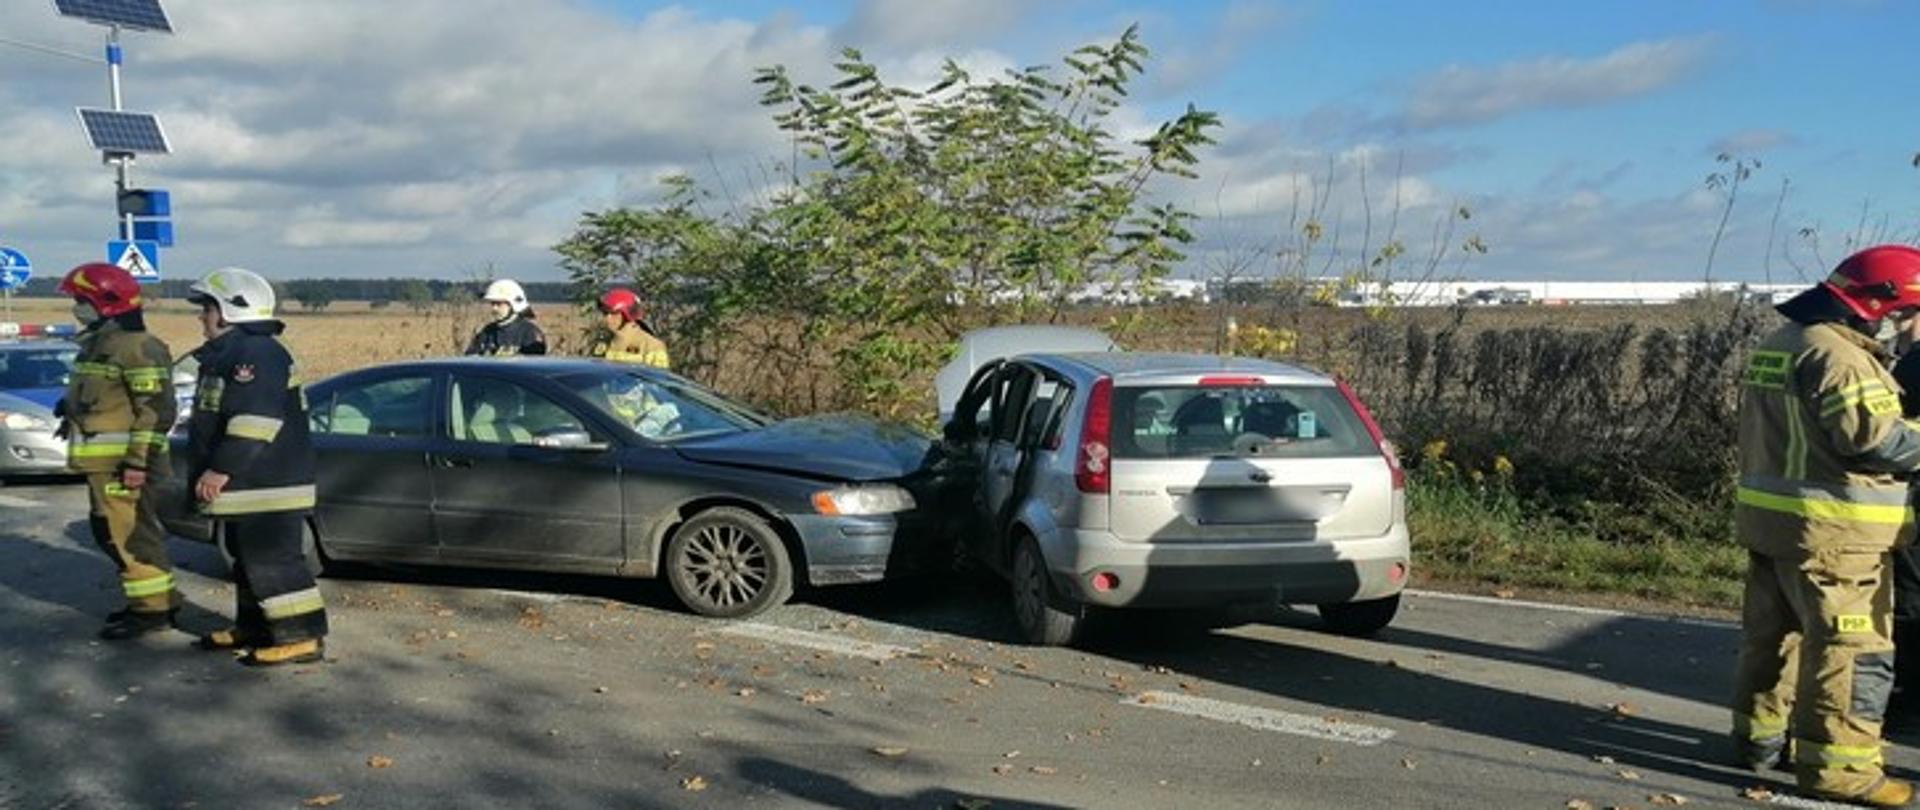 Zdjęcie przedstawia dwa samochody osobowe, które uległy wypadkowi. Pojazdy znajdują się na jezdni, a wokół nich widać strażaków ratowników.